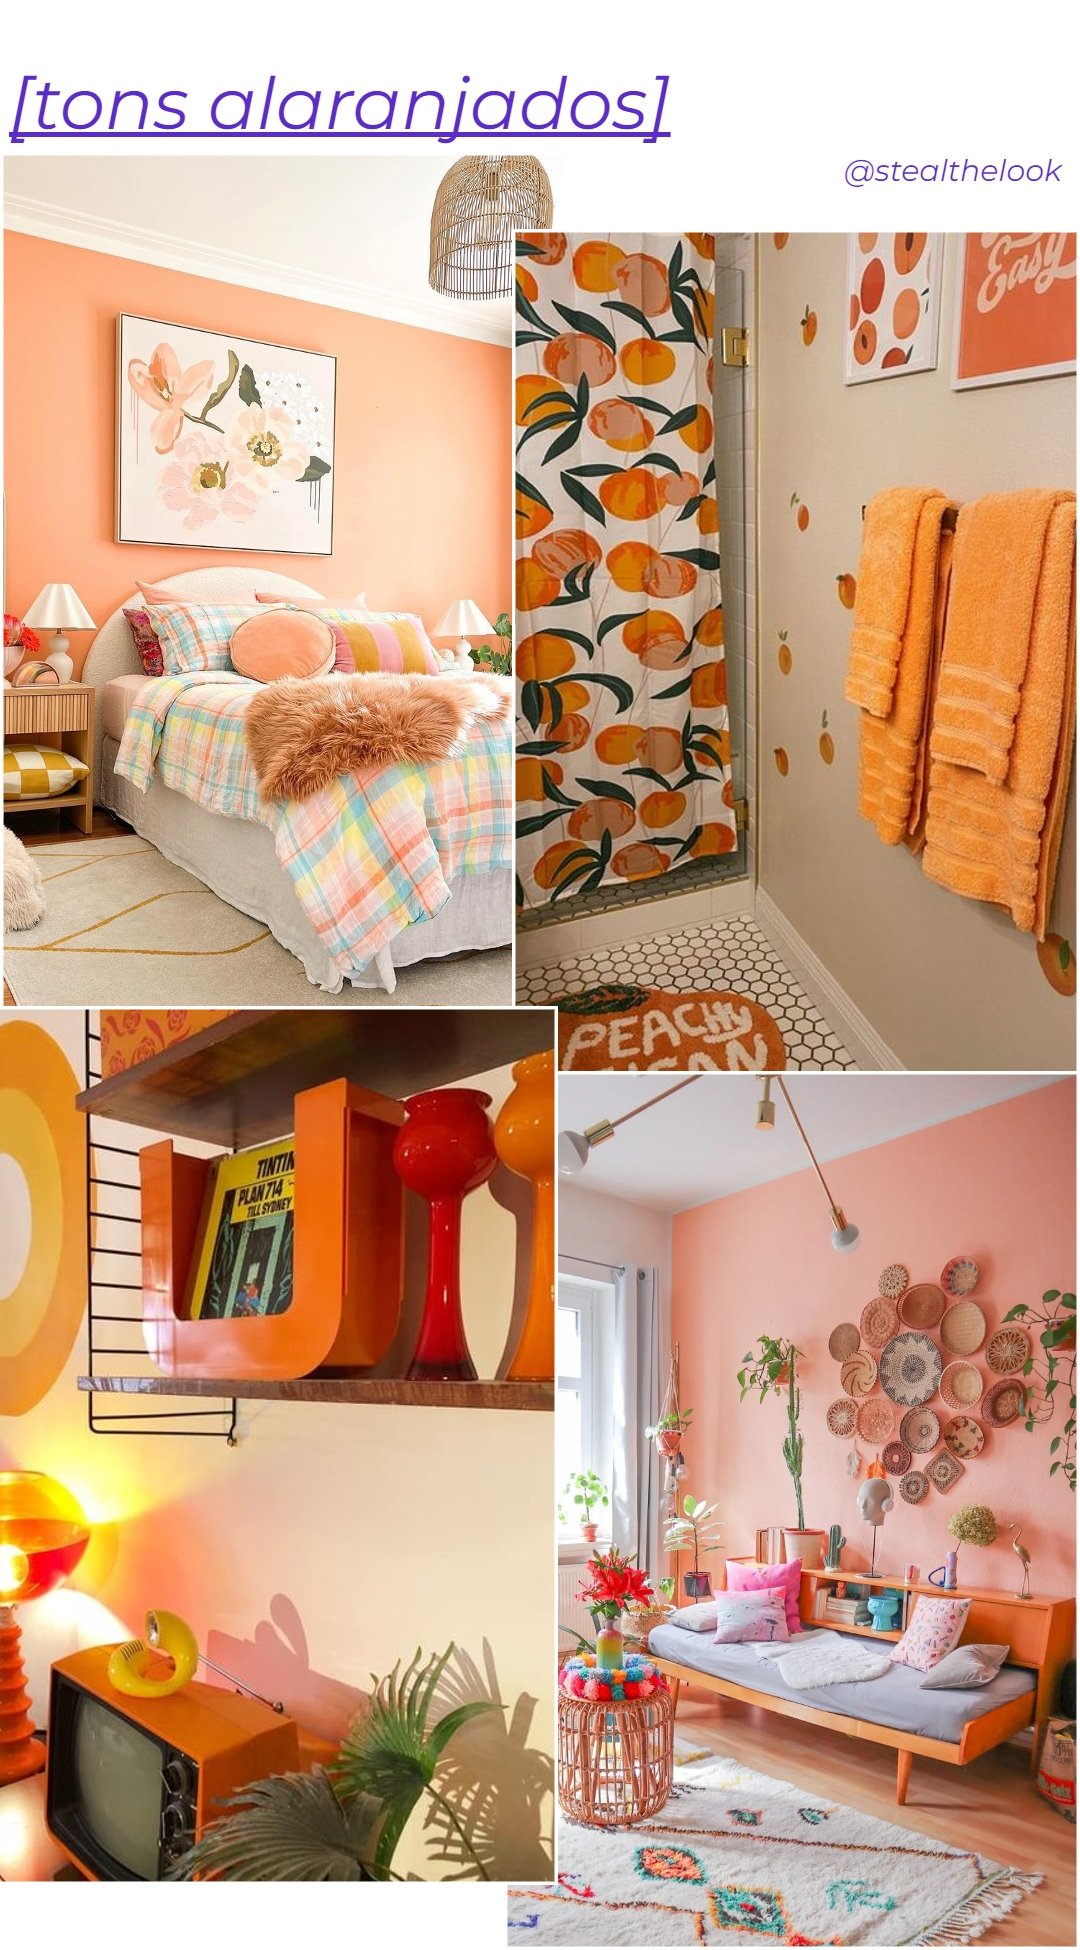 Tons alaranjados - casa - tendências de cores para casa - decor - decoração  - https://stealthelook.com.br